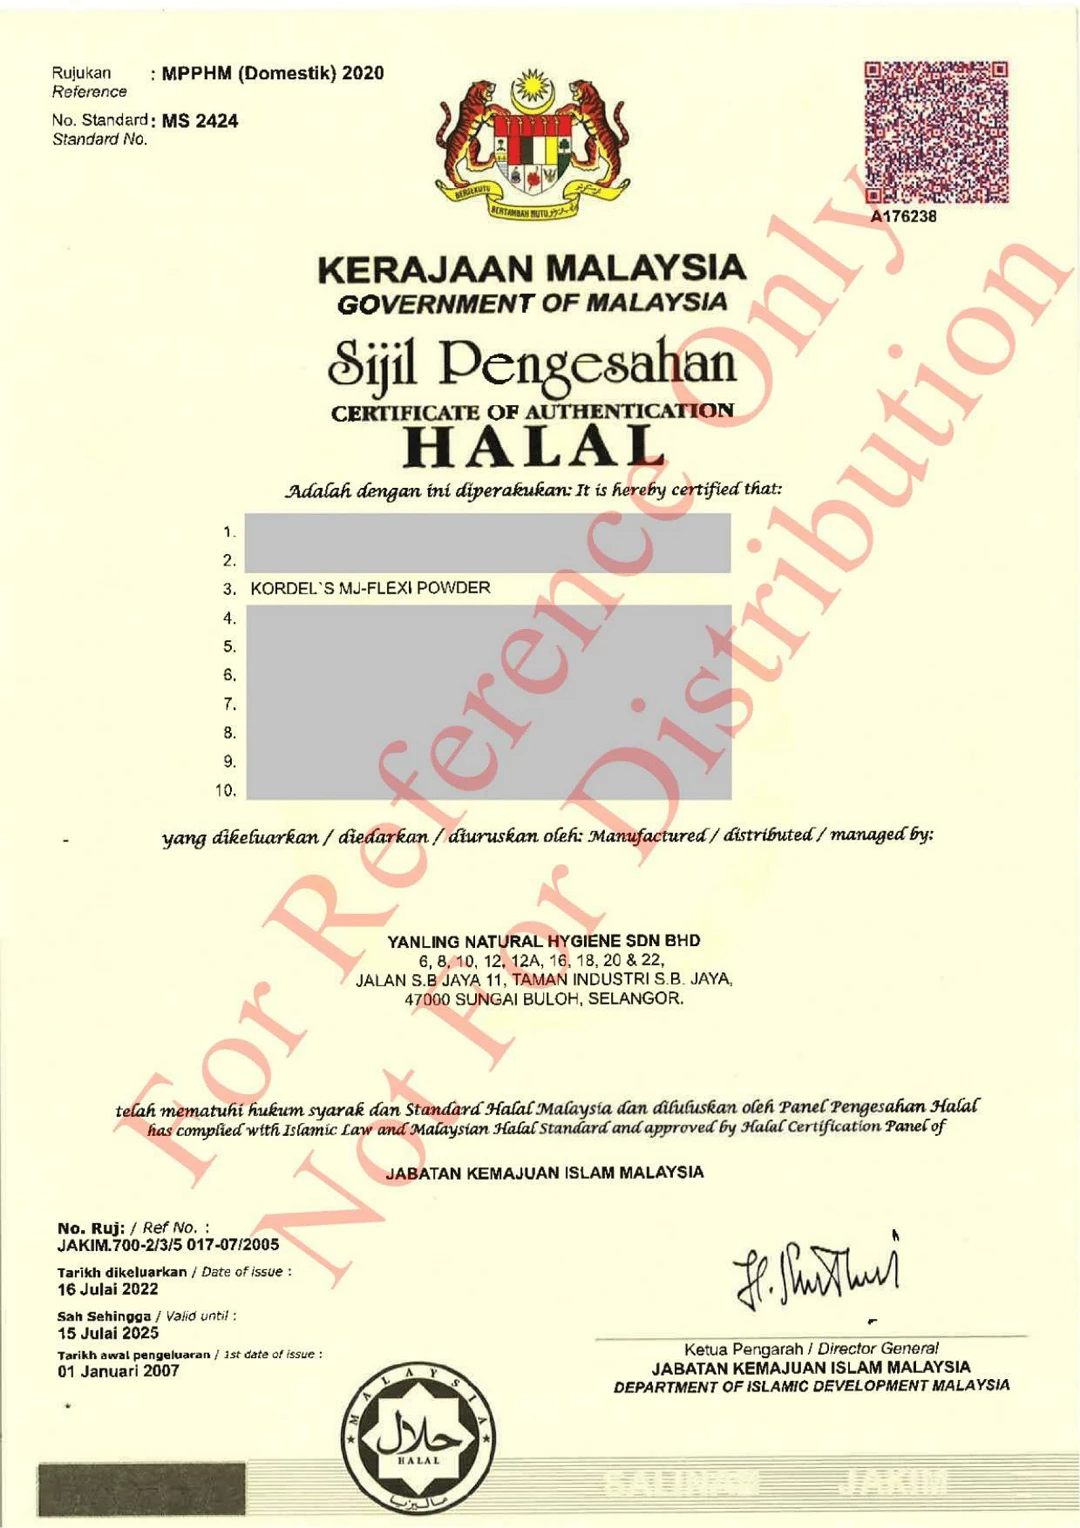 Halal Certification For Kordel's M-JFlexi